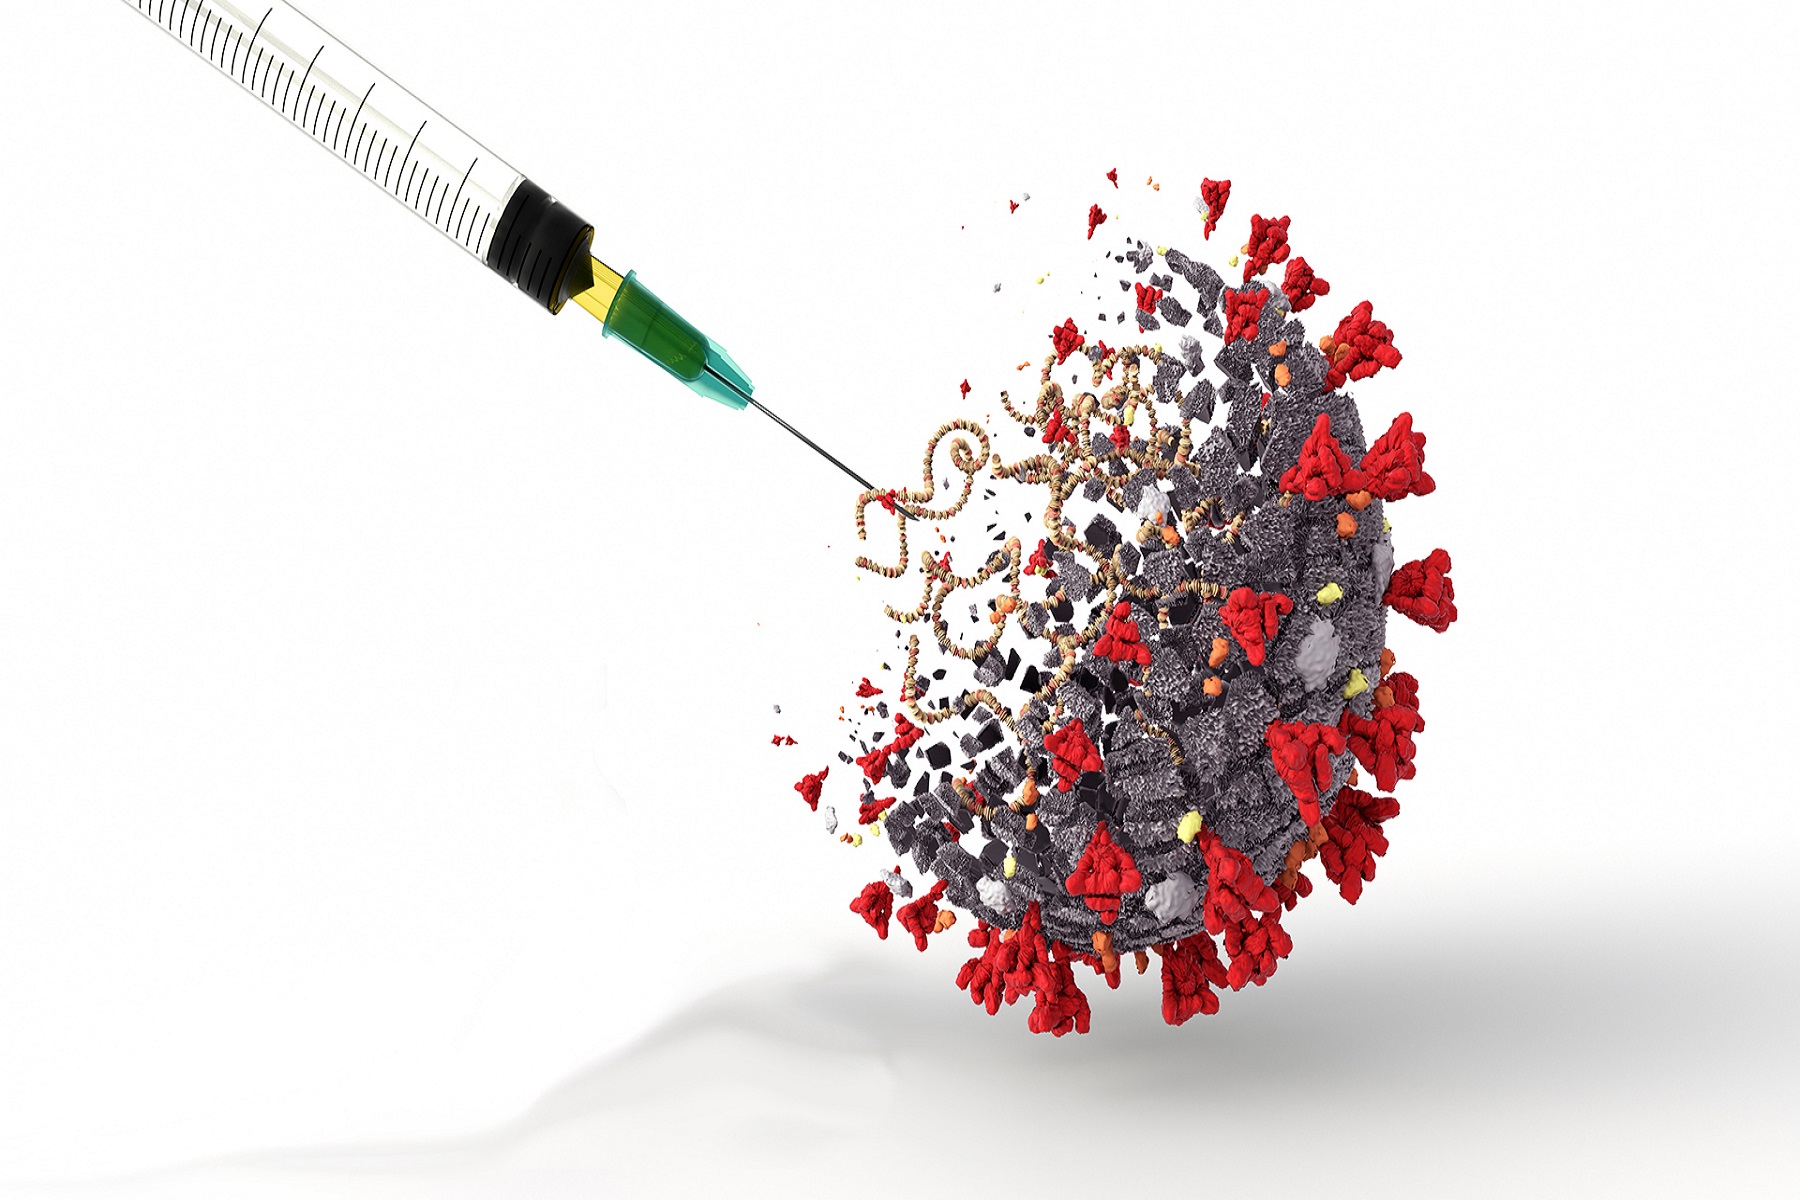 Ιατρική Σχολή Johns Hopkins: H καθυστέρηση μεταξύ των ενισχυτών εμβολίων COVID-19 και οι νέες παραλλαγές υπογραμμίζουν την ανάγκη για θεραπεία